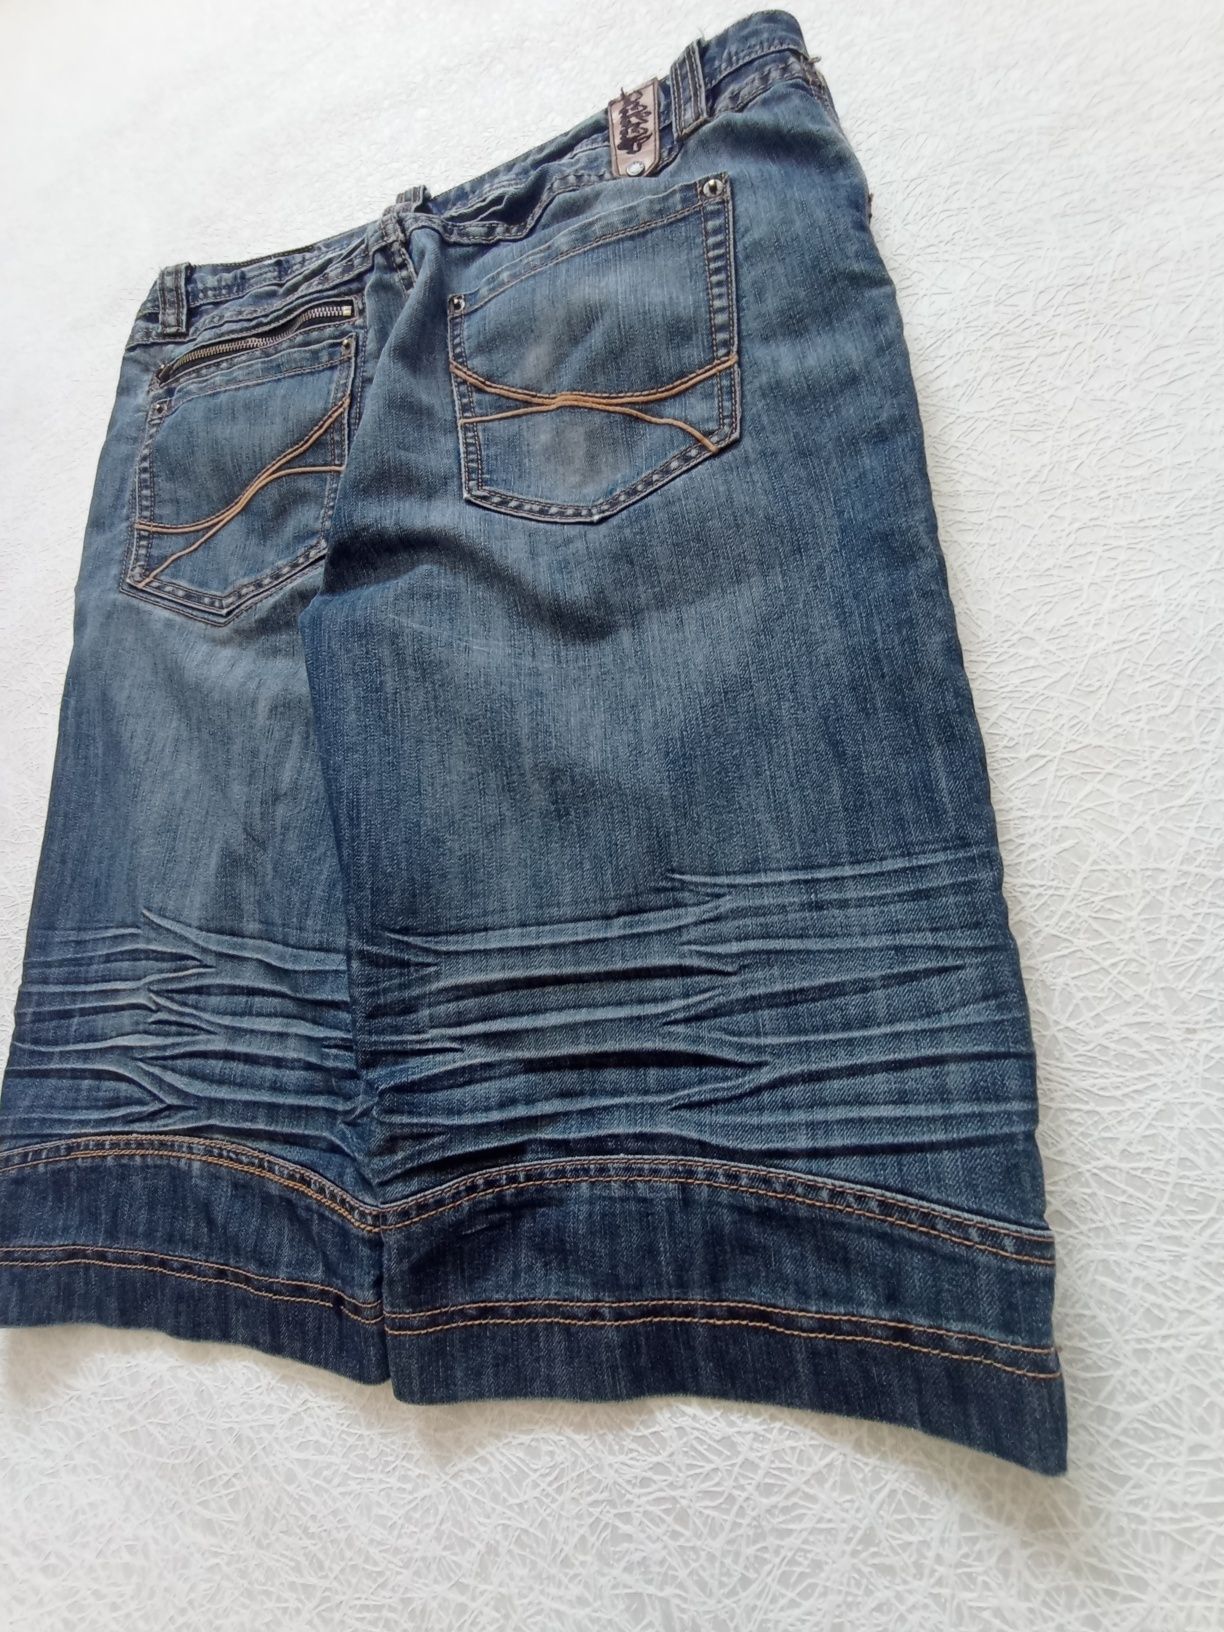 Big vintage shorts sk8 шорты